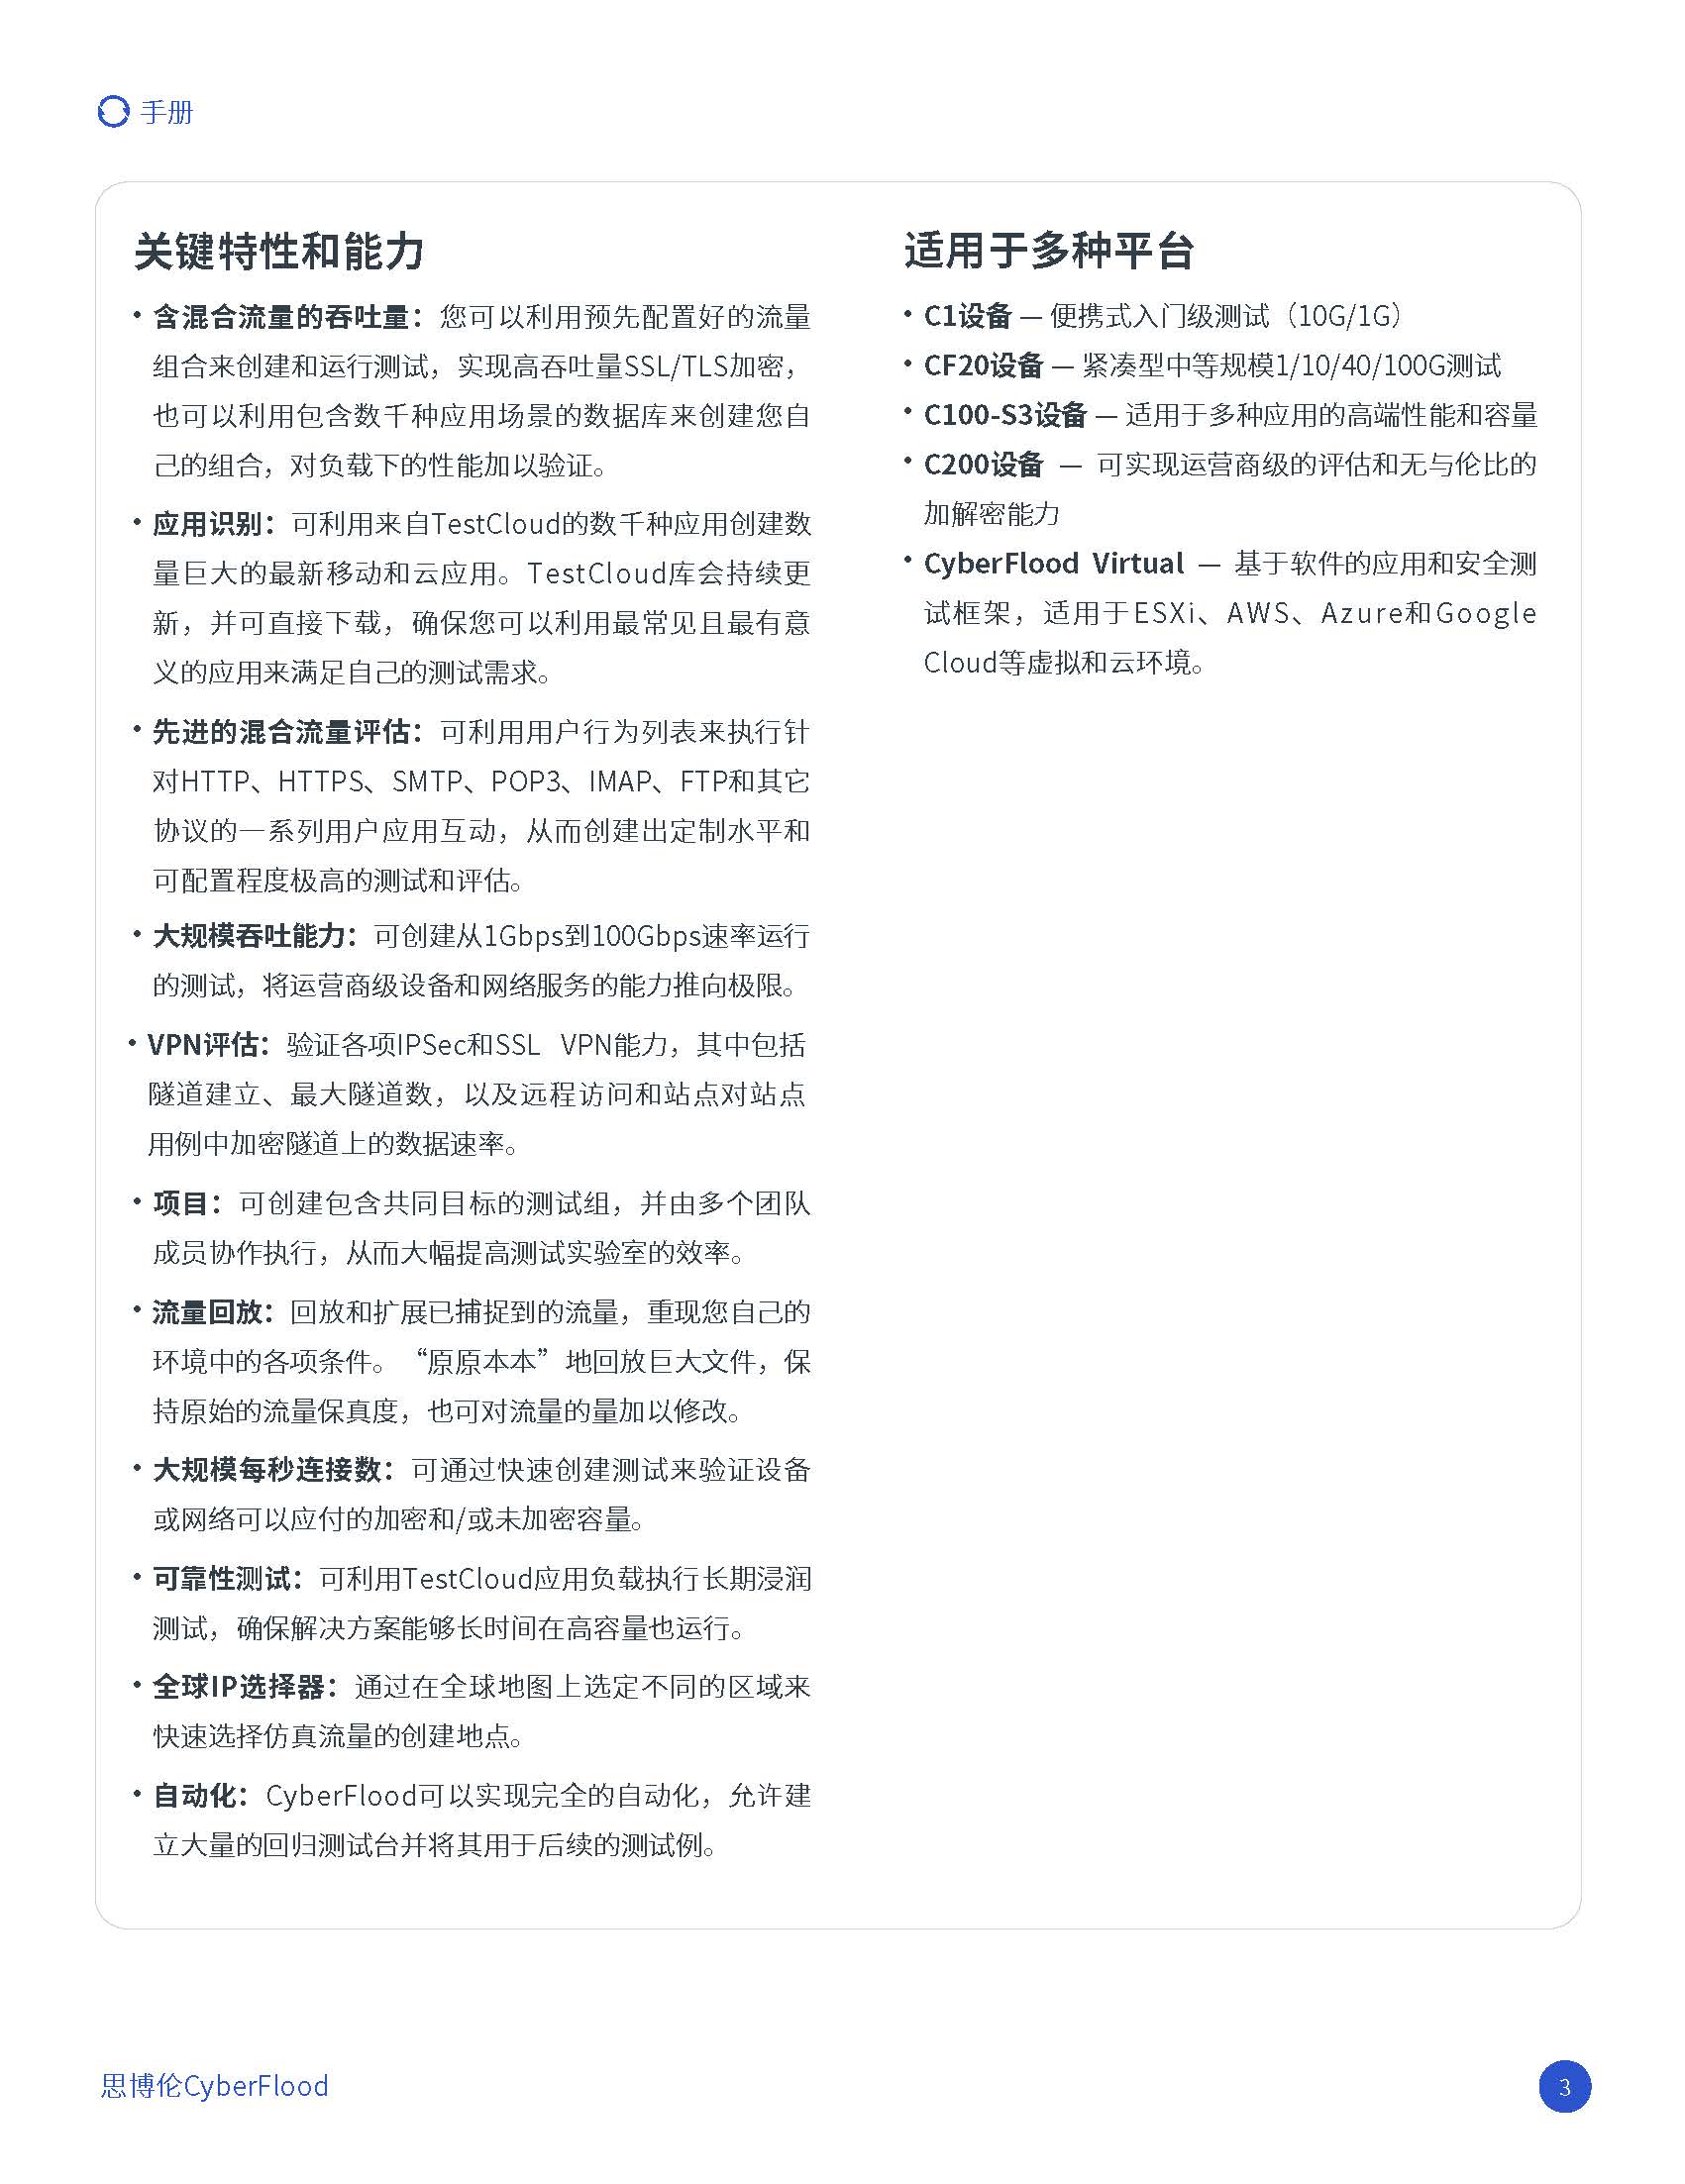 中文更新-BR_Spirent_CyberFlood_202107_页面_3.jpg